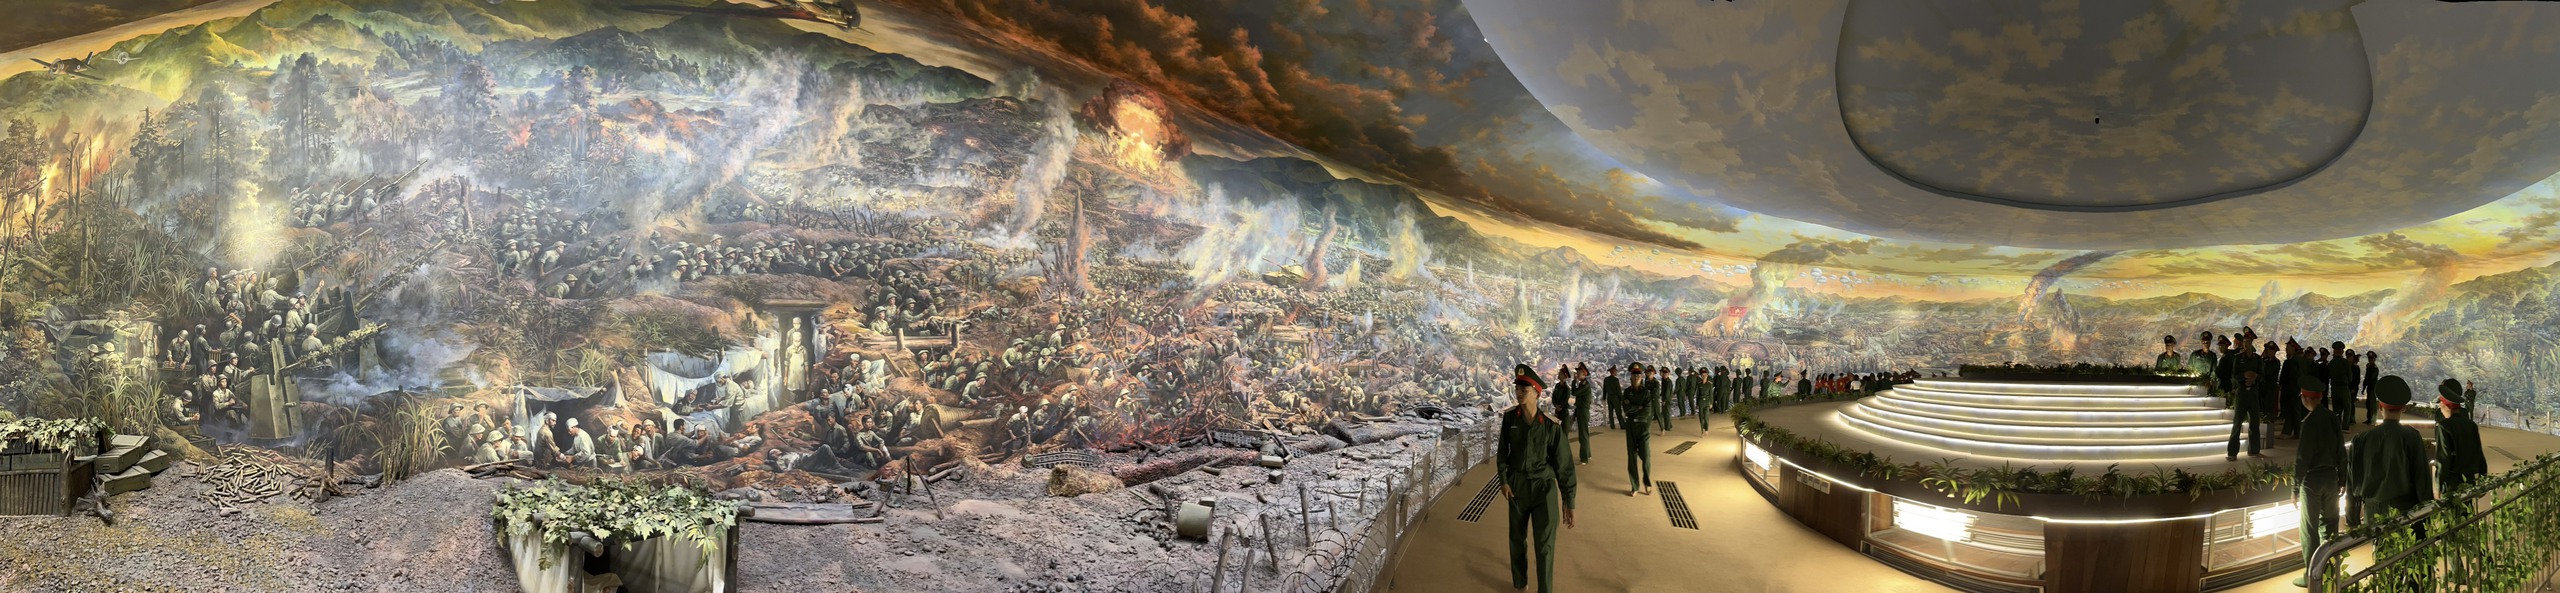 Bức tranh panorama lớn nhất Đông Nam Á (diện tích 3.225 m2) về chiến dịch Điện Biên Phủ tại bảo tàng Chiến Thắng Điện Biên Phủ ở TP. Điện Biên, tỉnh Điện Biên